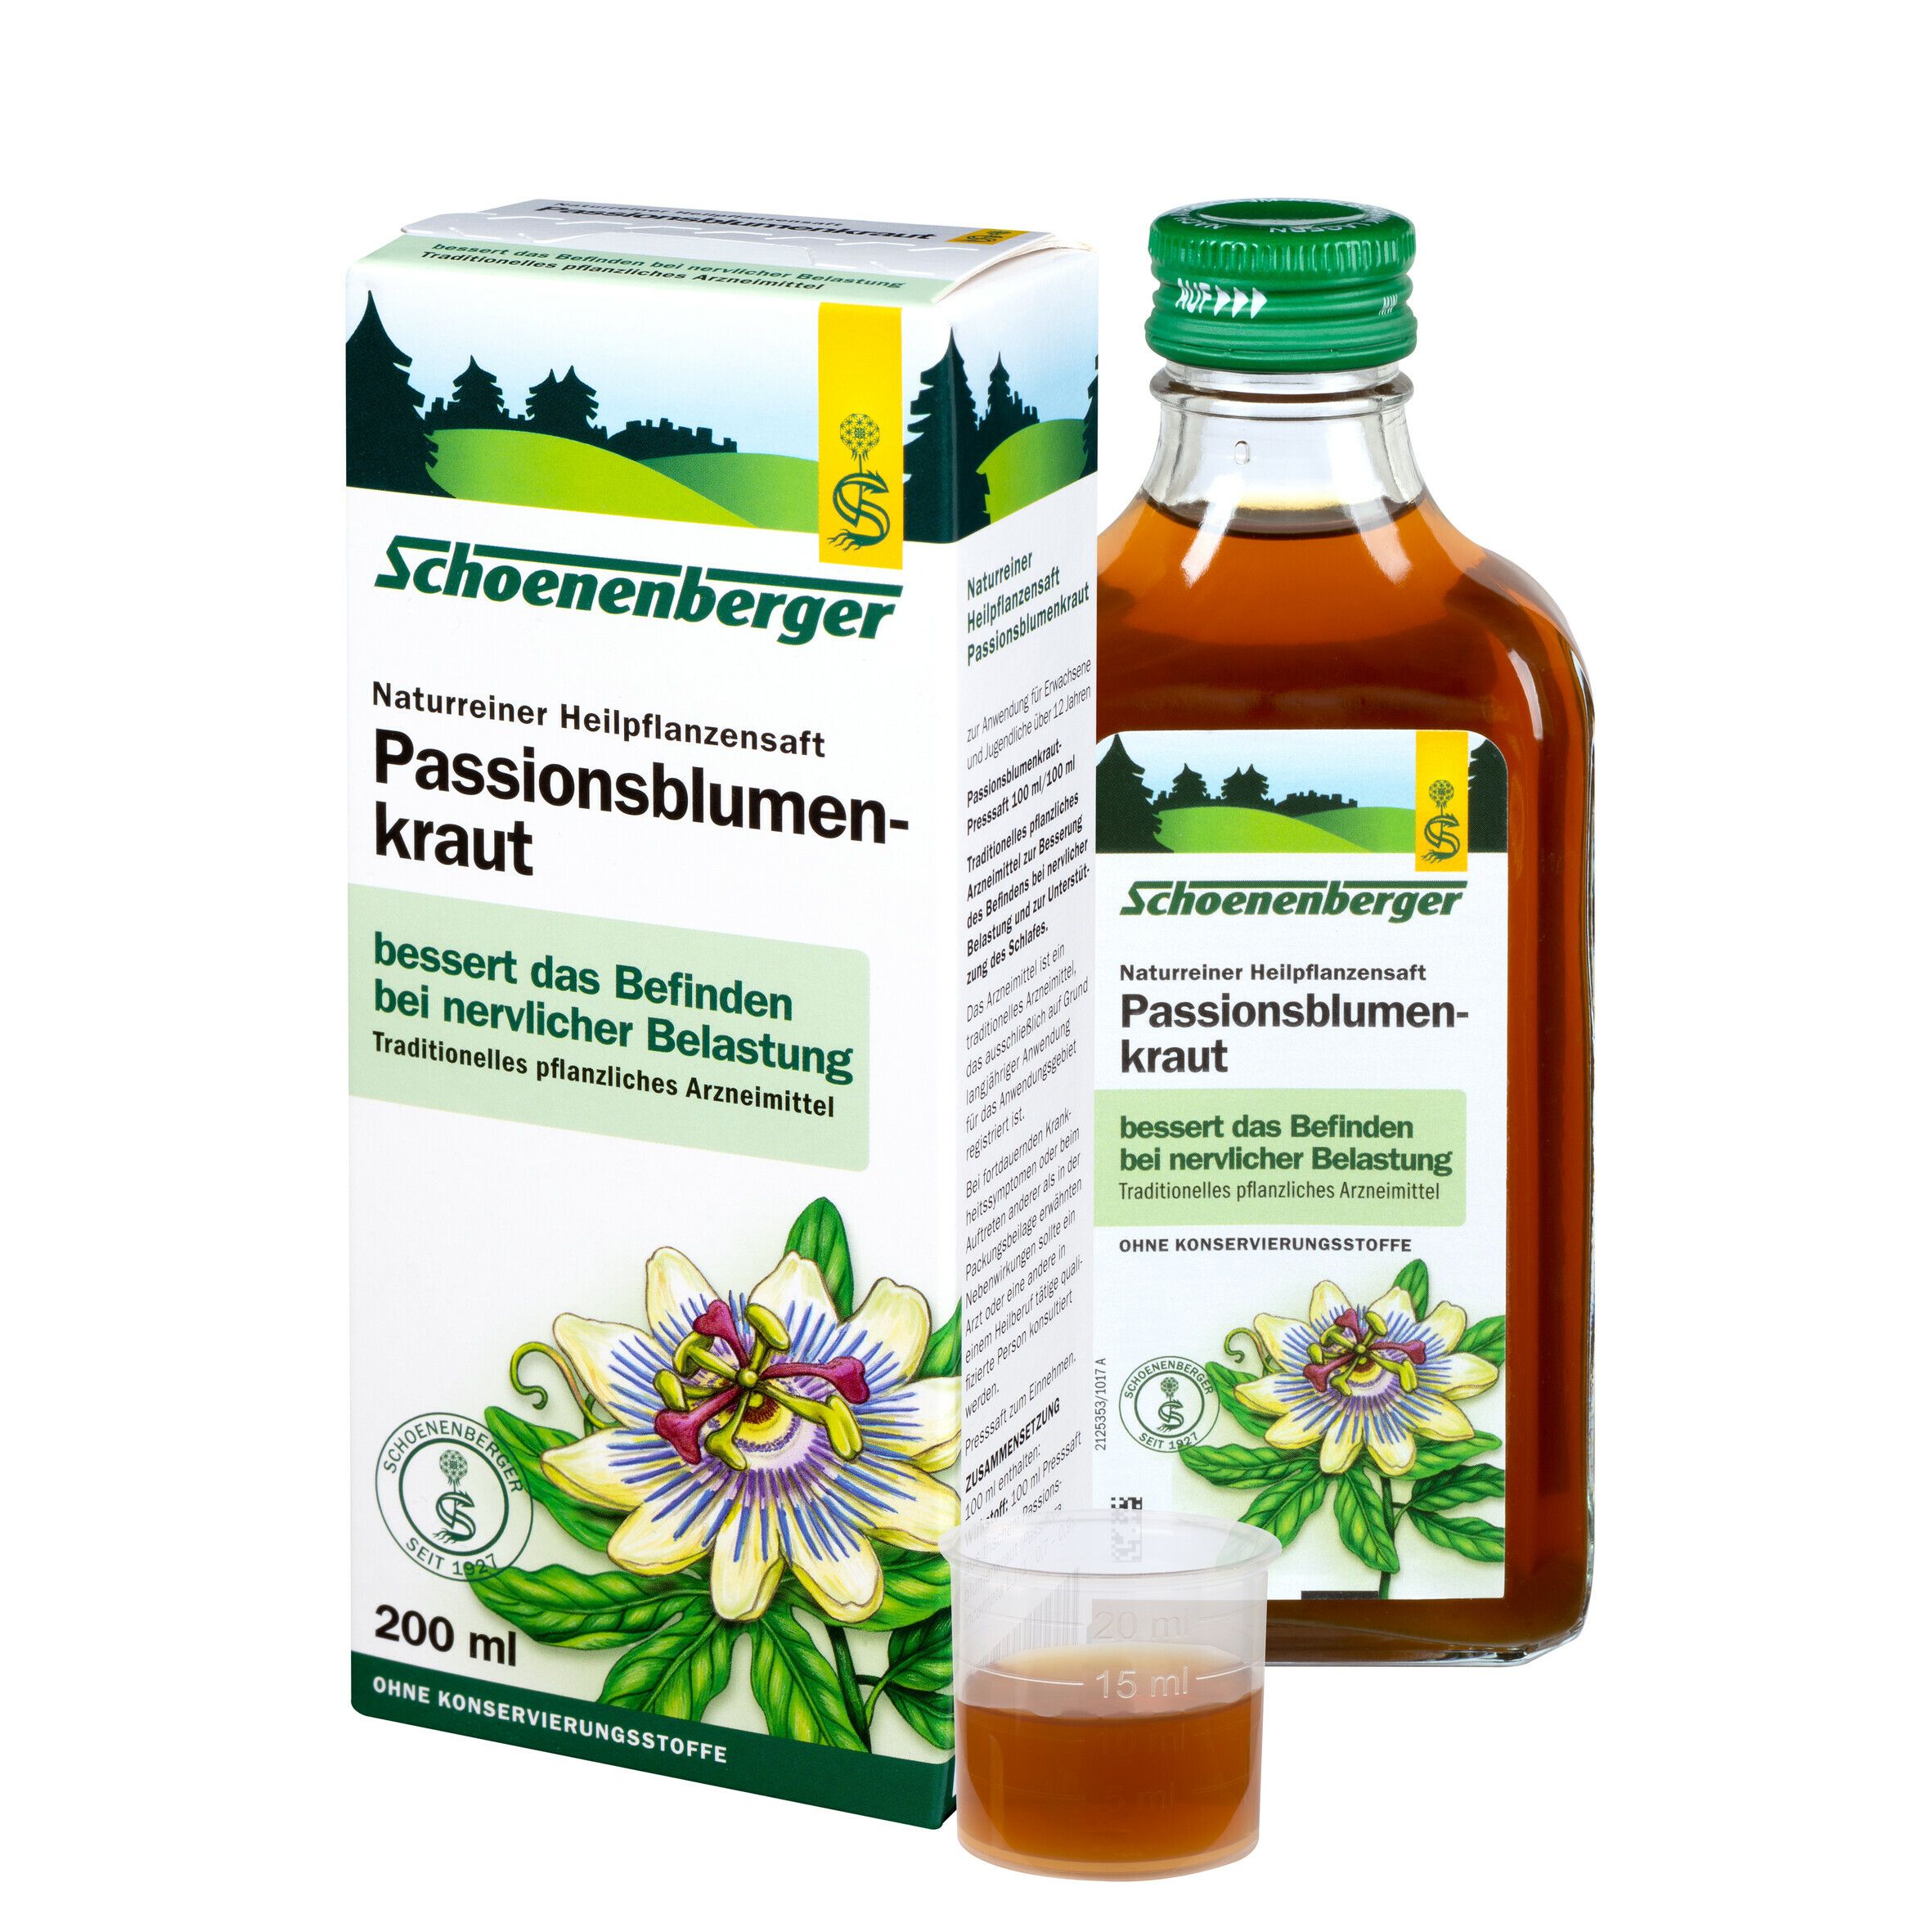 Schoenenberger® naturreiner Heilpflanzensaft Passionsblumenkraut